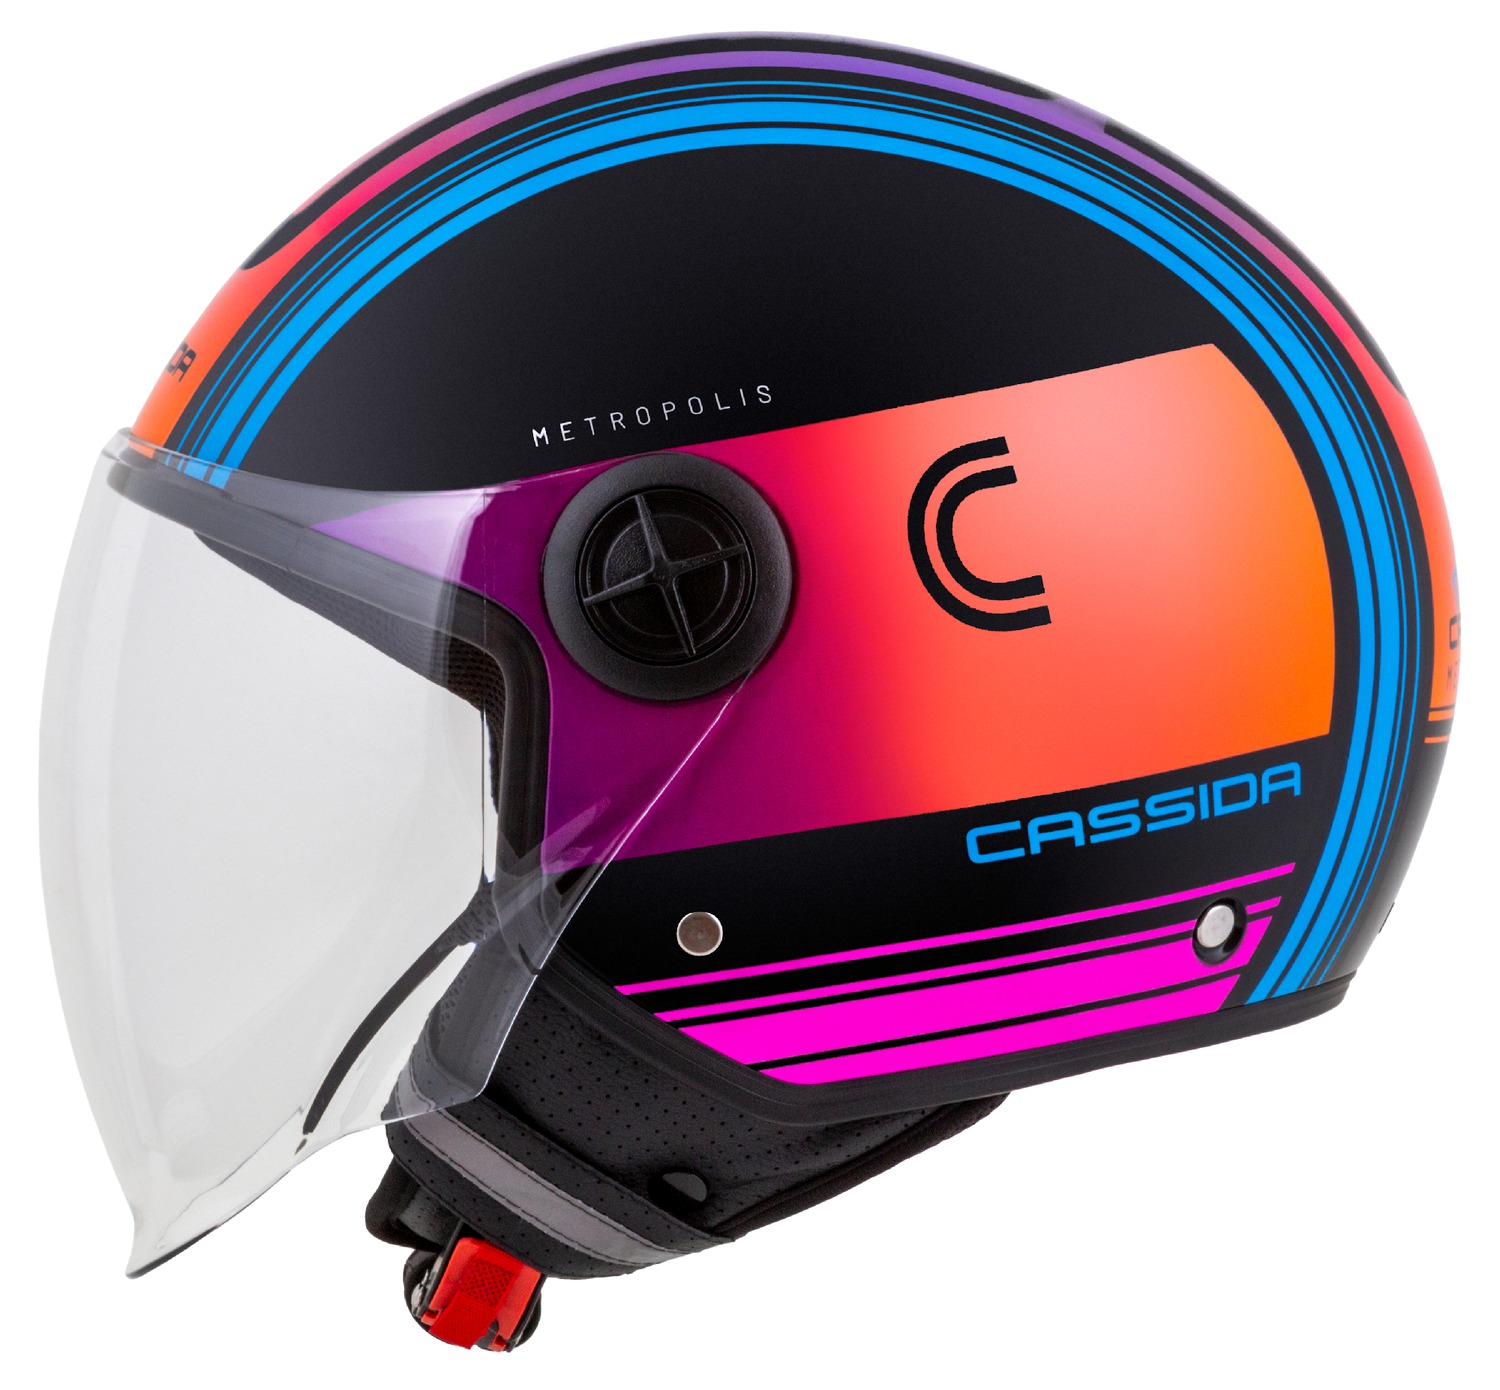 helmet Handy Metropolis, CASSIDA (black/turquoise /gradient) 2023